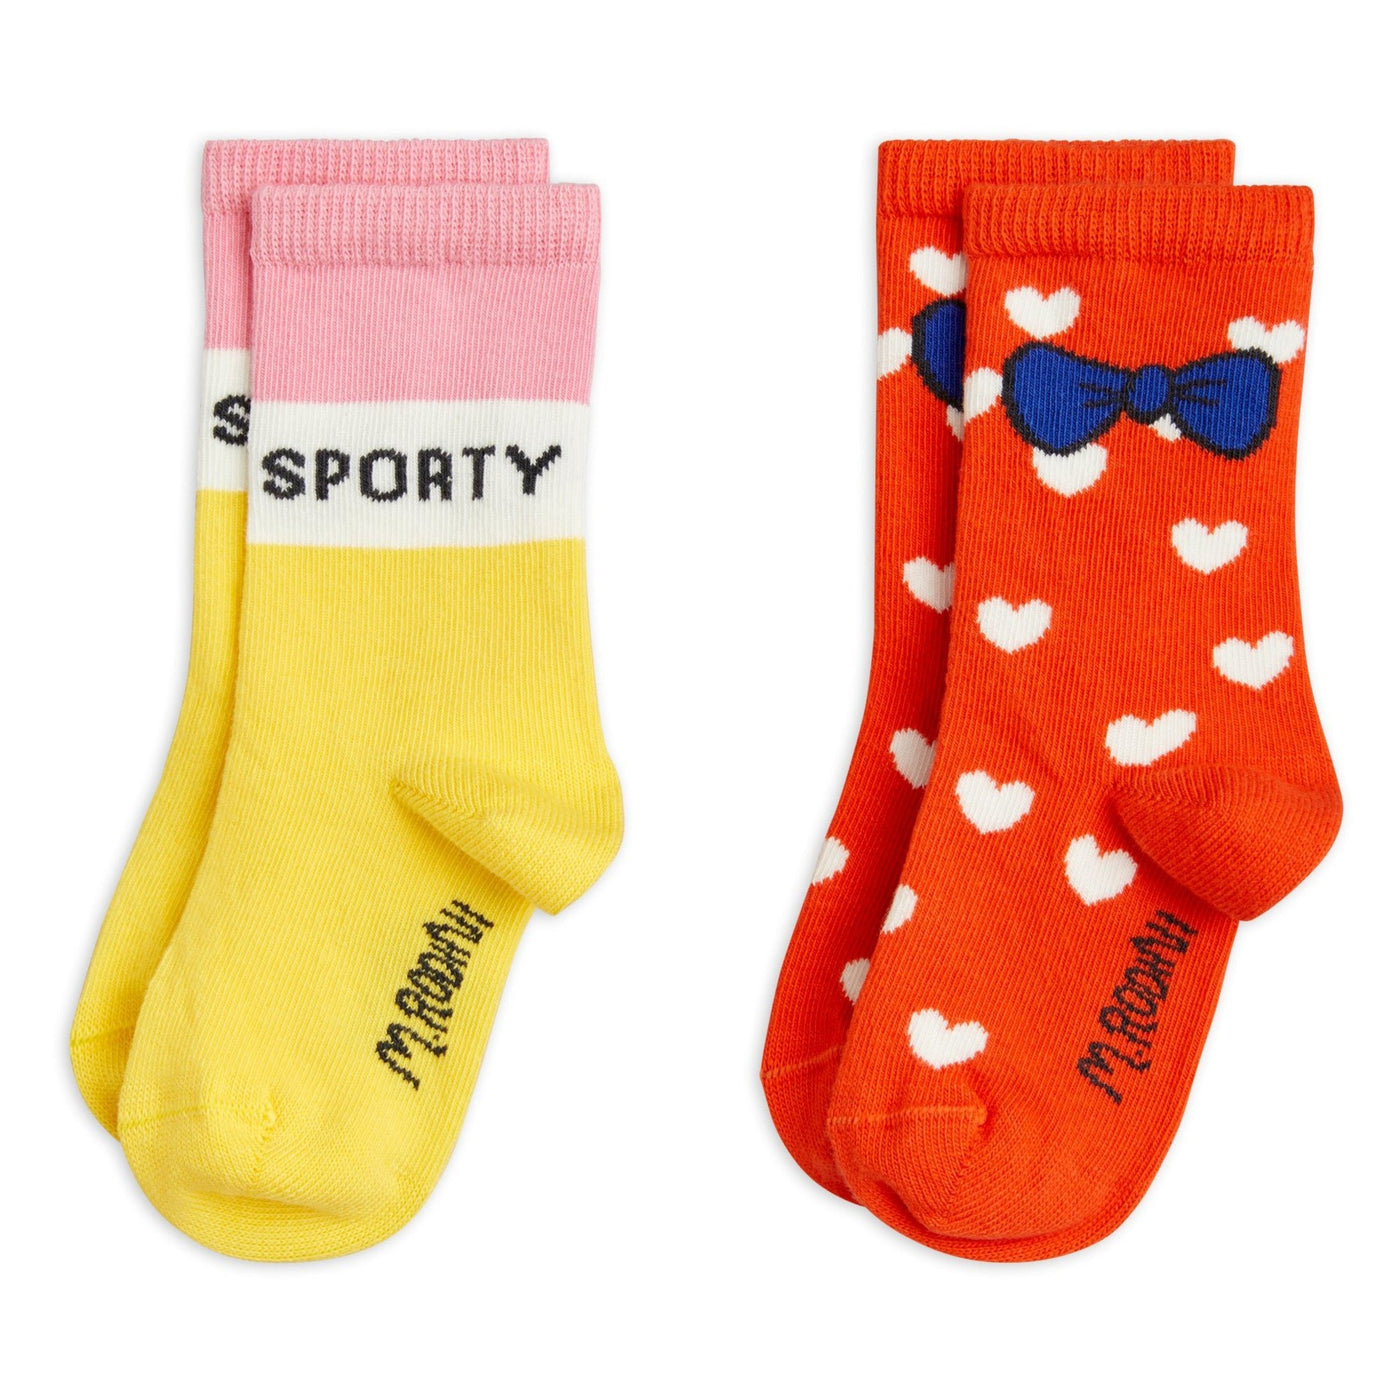 Sporty Socks 2-Pack by Mini Rodini - Petite Belle